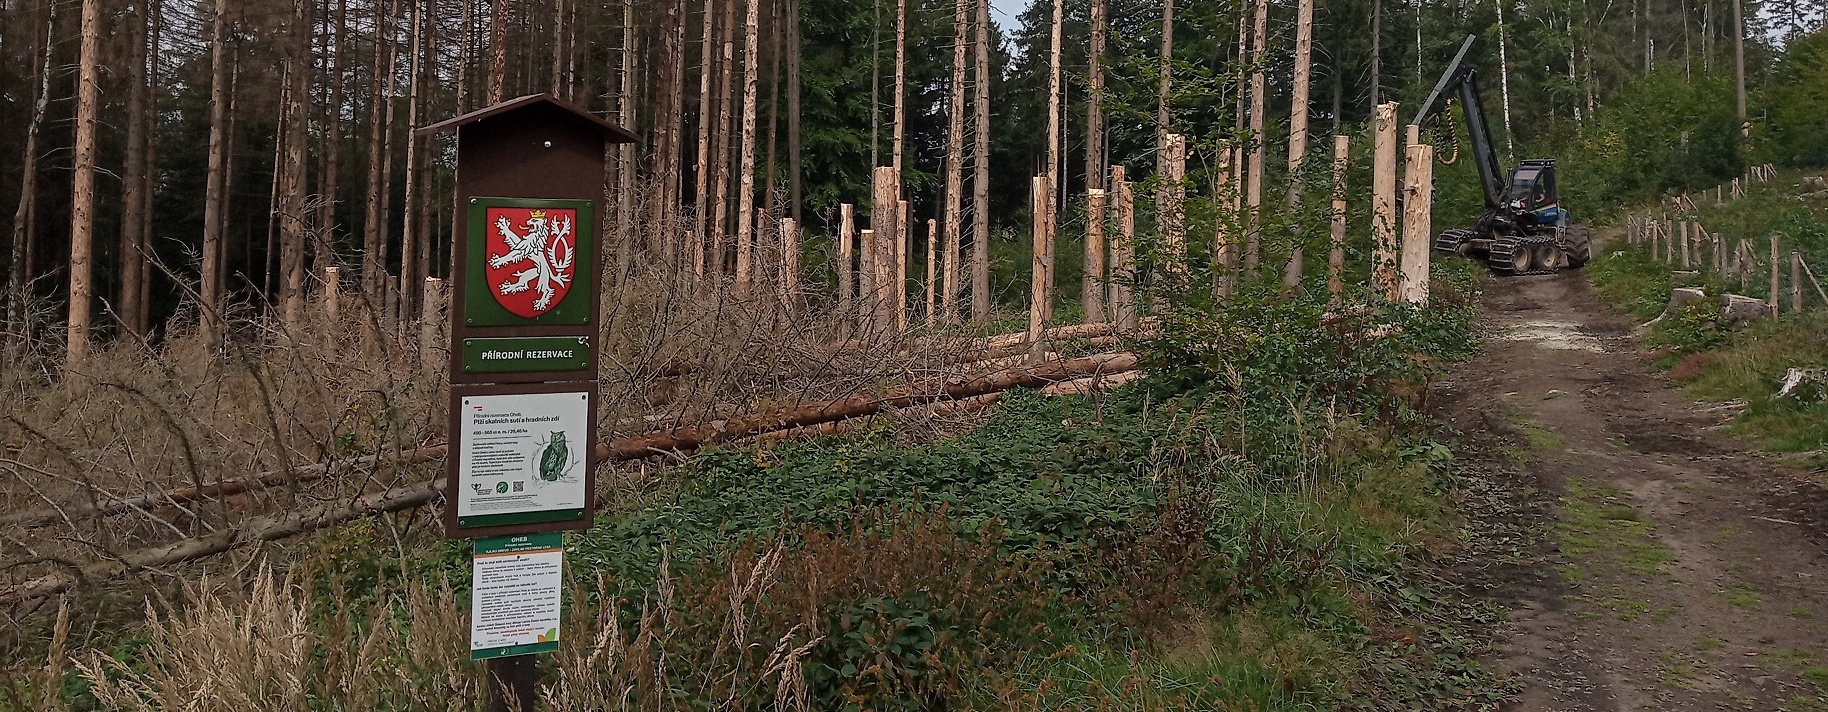 Pro turisty bezpečné ponechávání dřeva v lese po kalamitě je možné